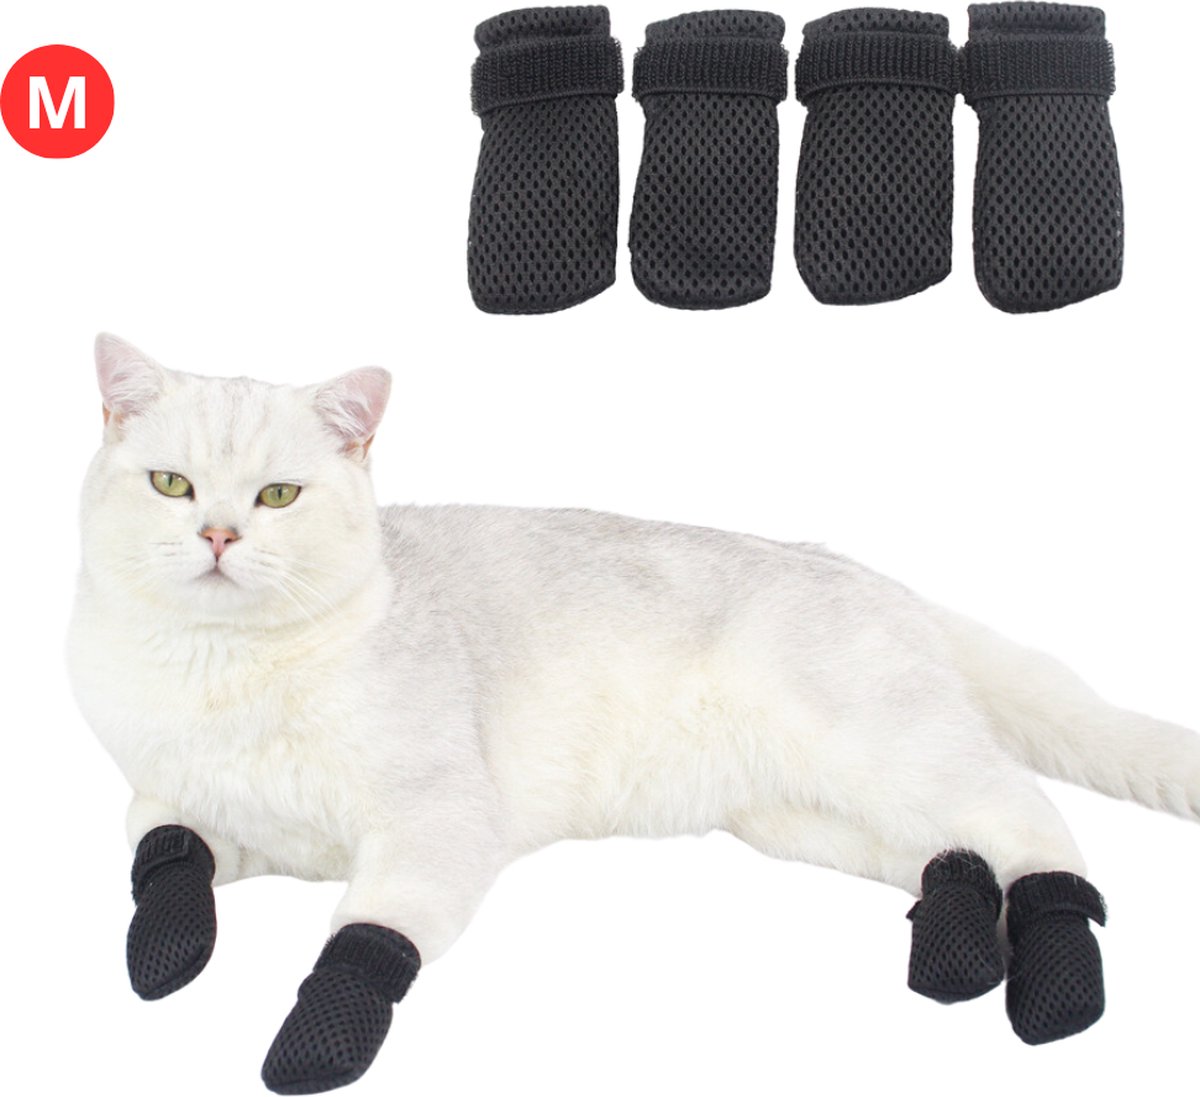 Livano Krab Bescherming Katten - Nagelhoesjes Kat - Anti Krab Katten - Kattennagels - Maat M - Zwart